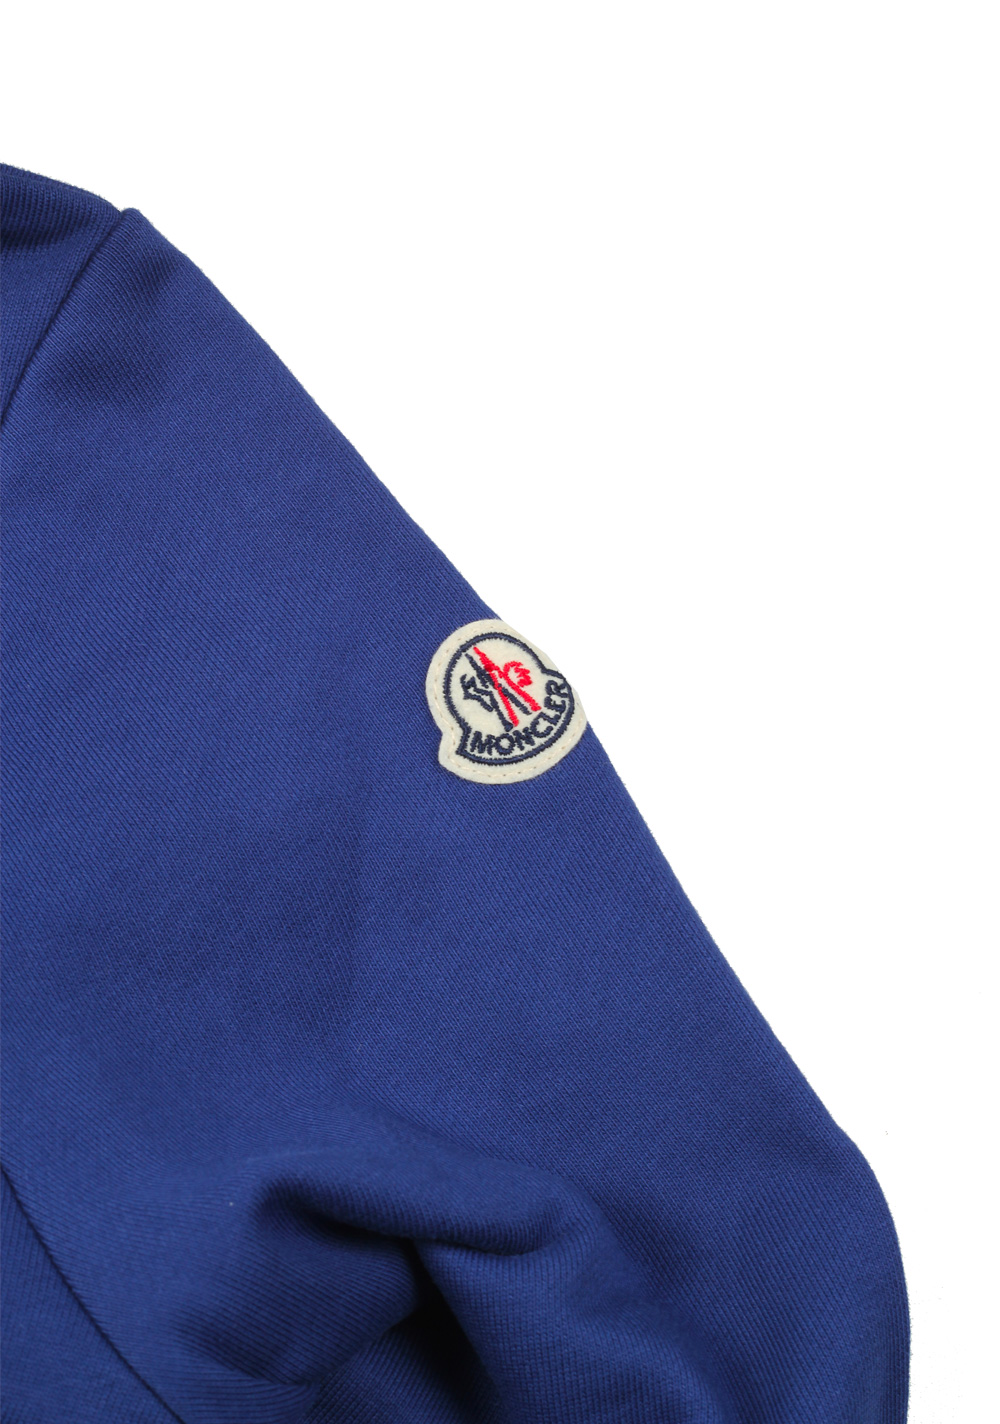 Moncler Blue Sweatshirt Hooded Sweater Size M / 48 / 38 U.S. Cotton | Costume Limité